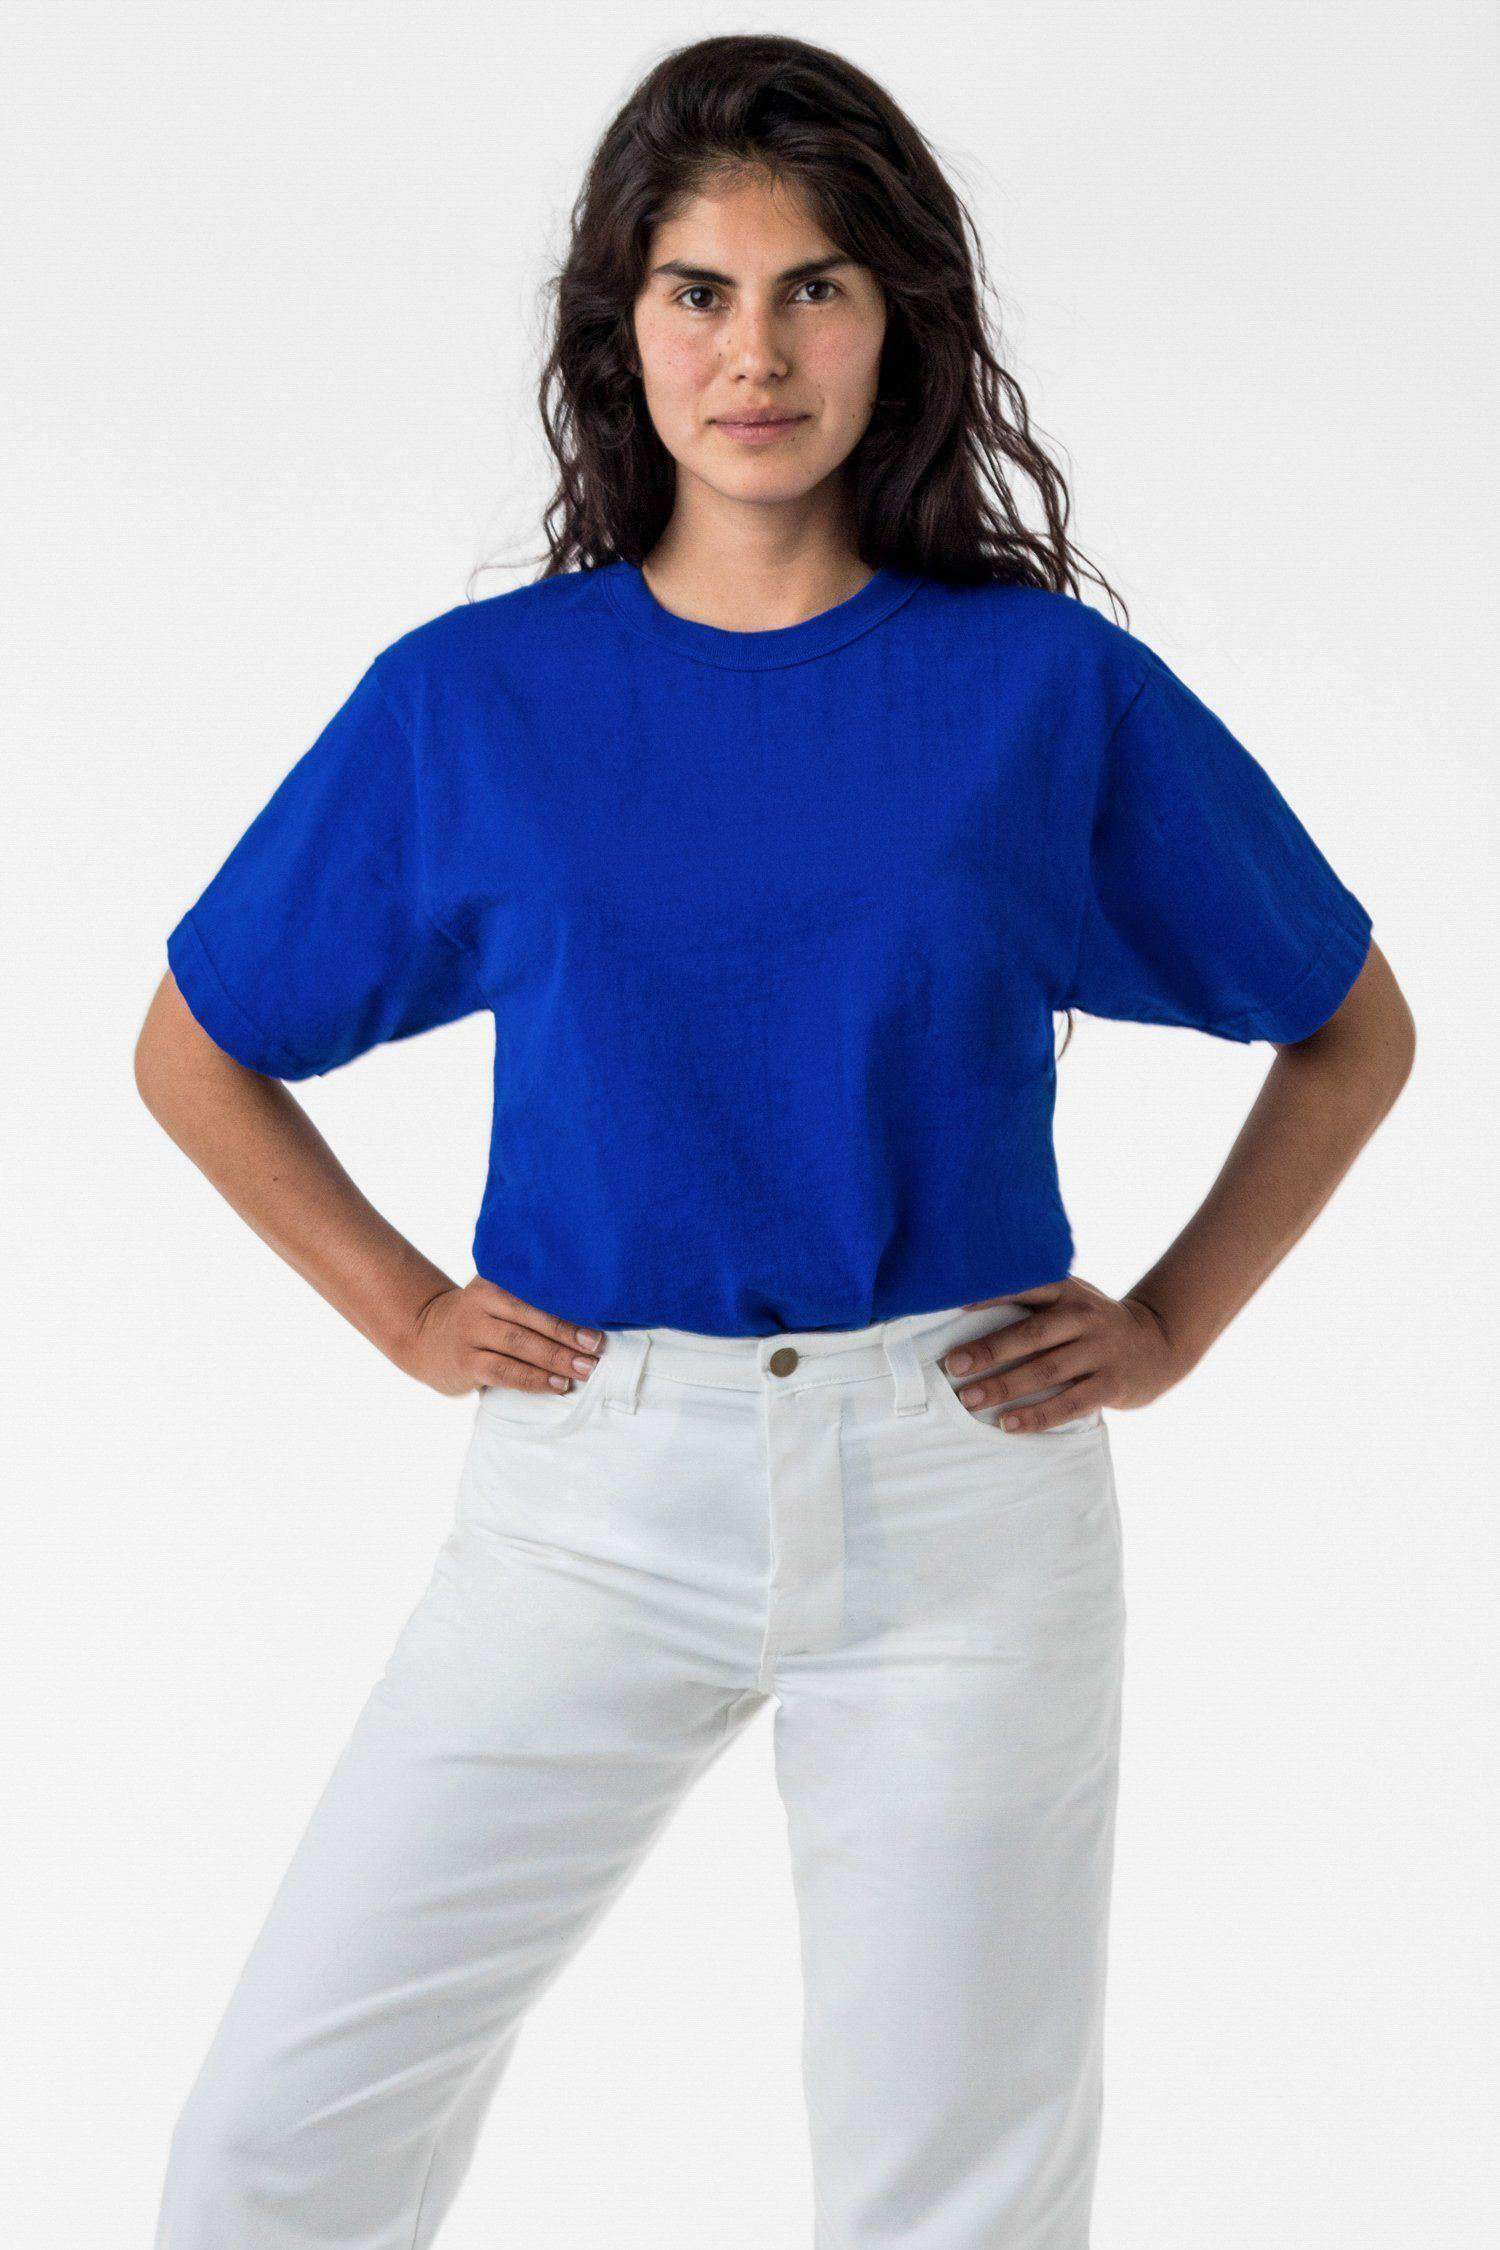 1203GD Unisex - Short Sleeve Binding Garment Dye T-Shirt T-Shirt Los Angeles Apparel Cobalt Blue XS 